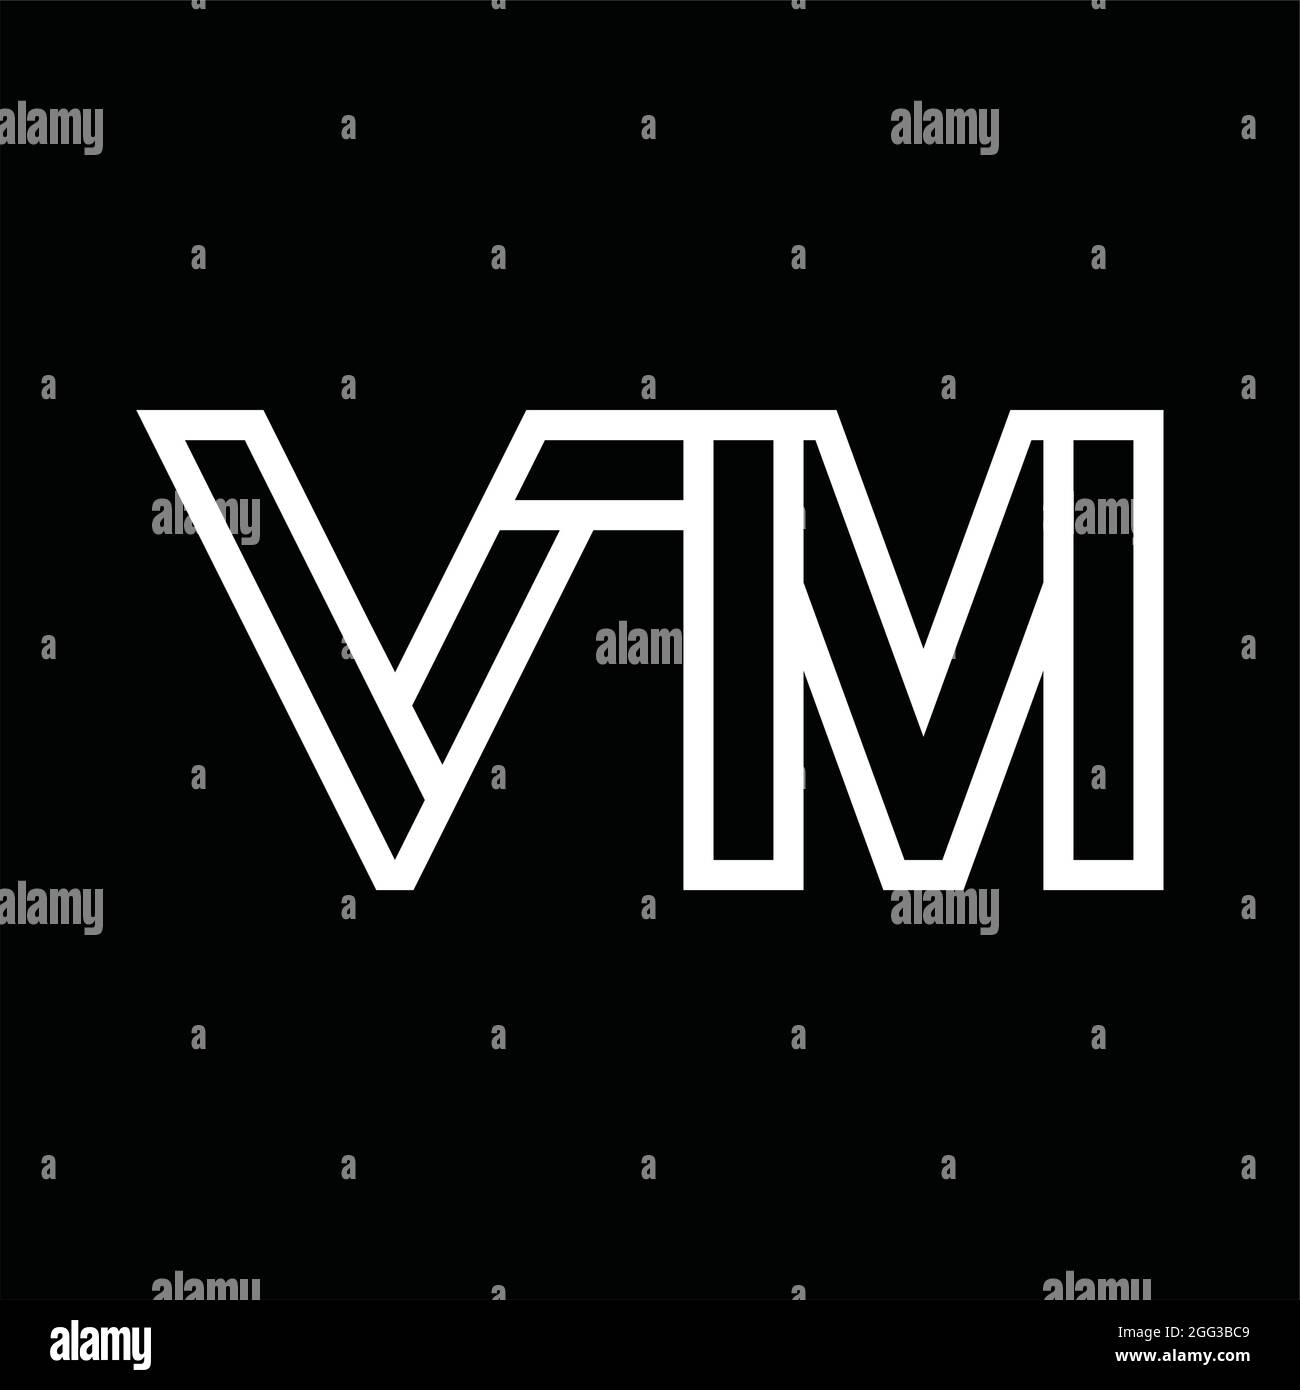 Logo monogram VM đã trở thành biểu tượng của sự sang trọng, tối giản và chuyên nghiệp. Sự đơn giản của nó làm nổi bật không gian xung quanh và giúp thương hiệu của bạn trở nên độc đáo và dễ nhận ra. Hãy khám phá thêm về vẻ đẹp đơn giản nhưng tinh tế của VM Logo monogram.